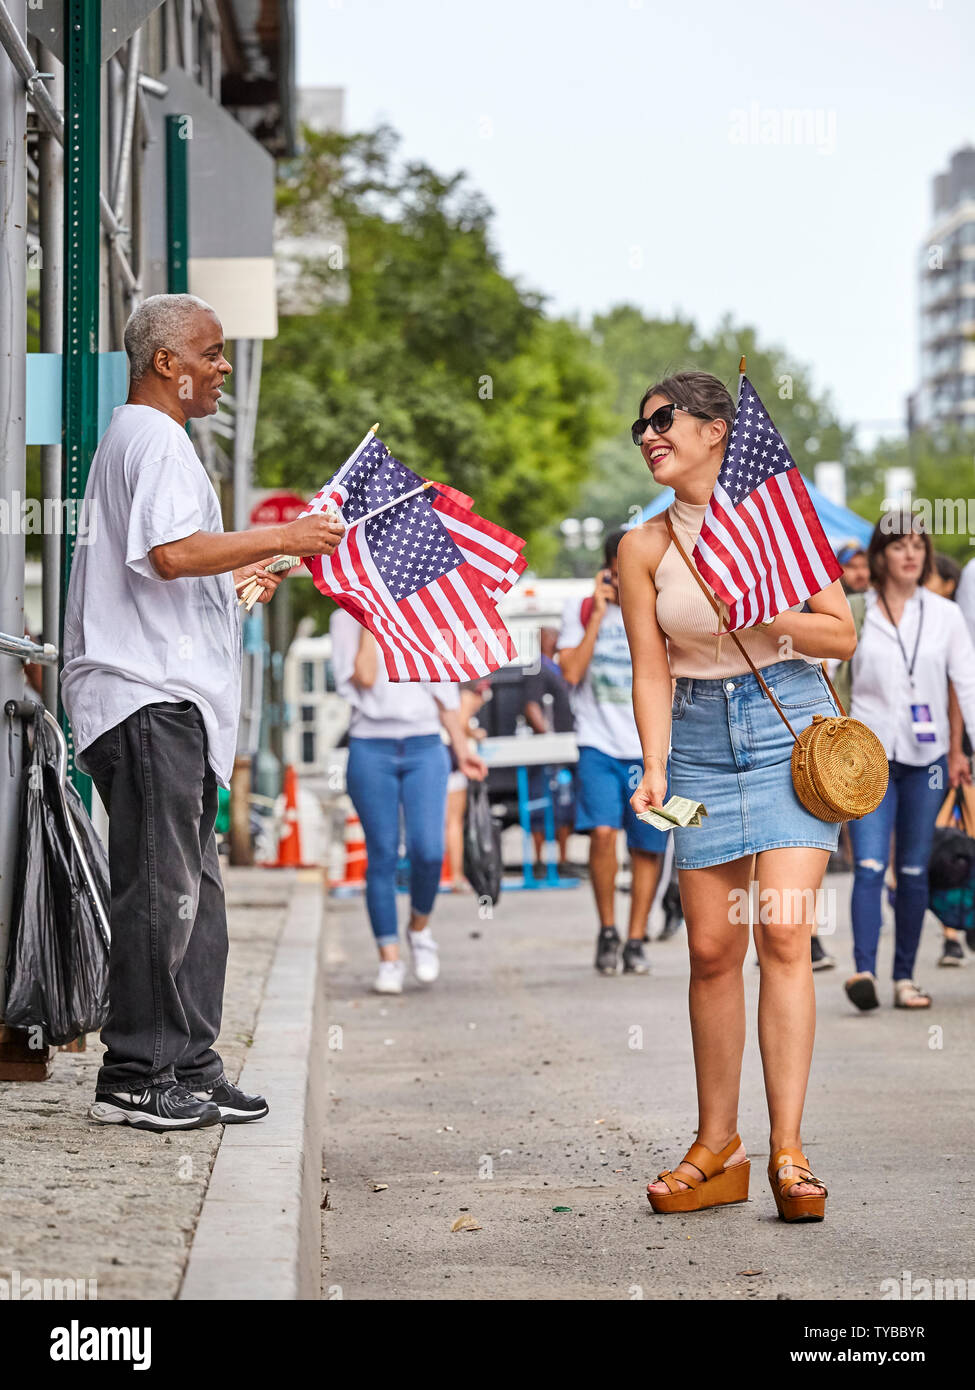 Nueva York, Estados Unidos - Julio 04, 2018: la mujer compra bandera americana durante la fiesta federal en los Estados Unidos en conmemoración de la Declaración de la independencia. Foto de stock